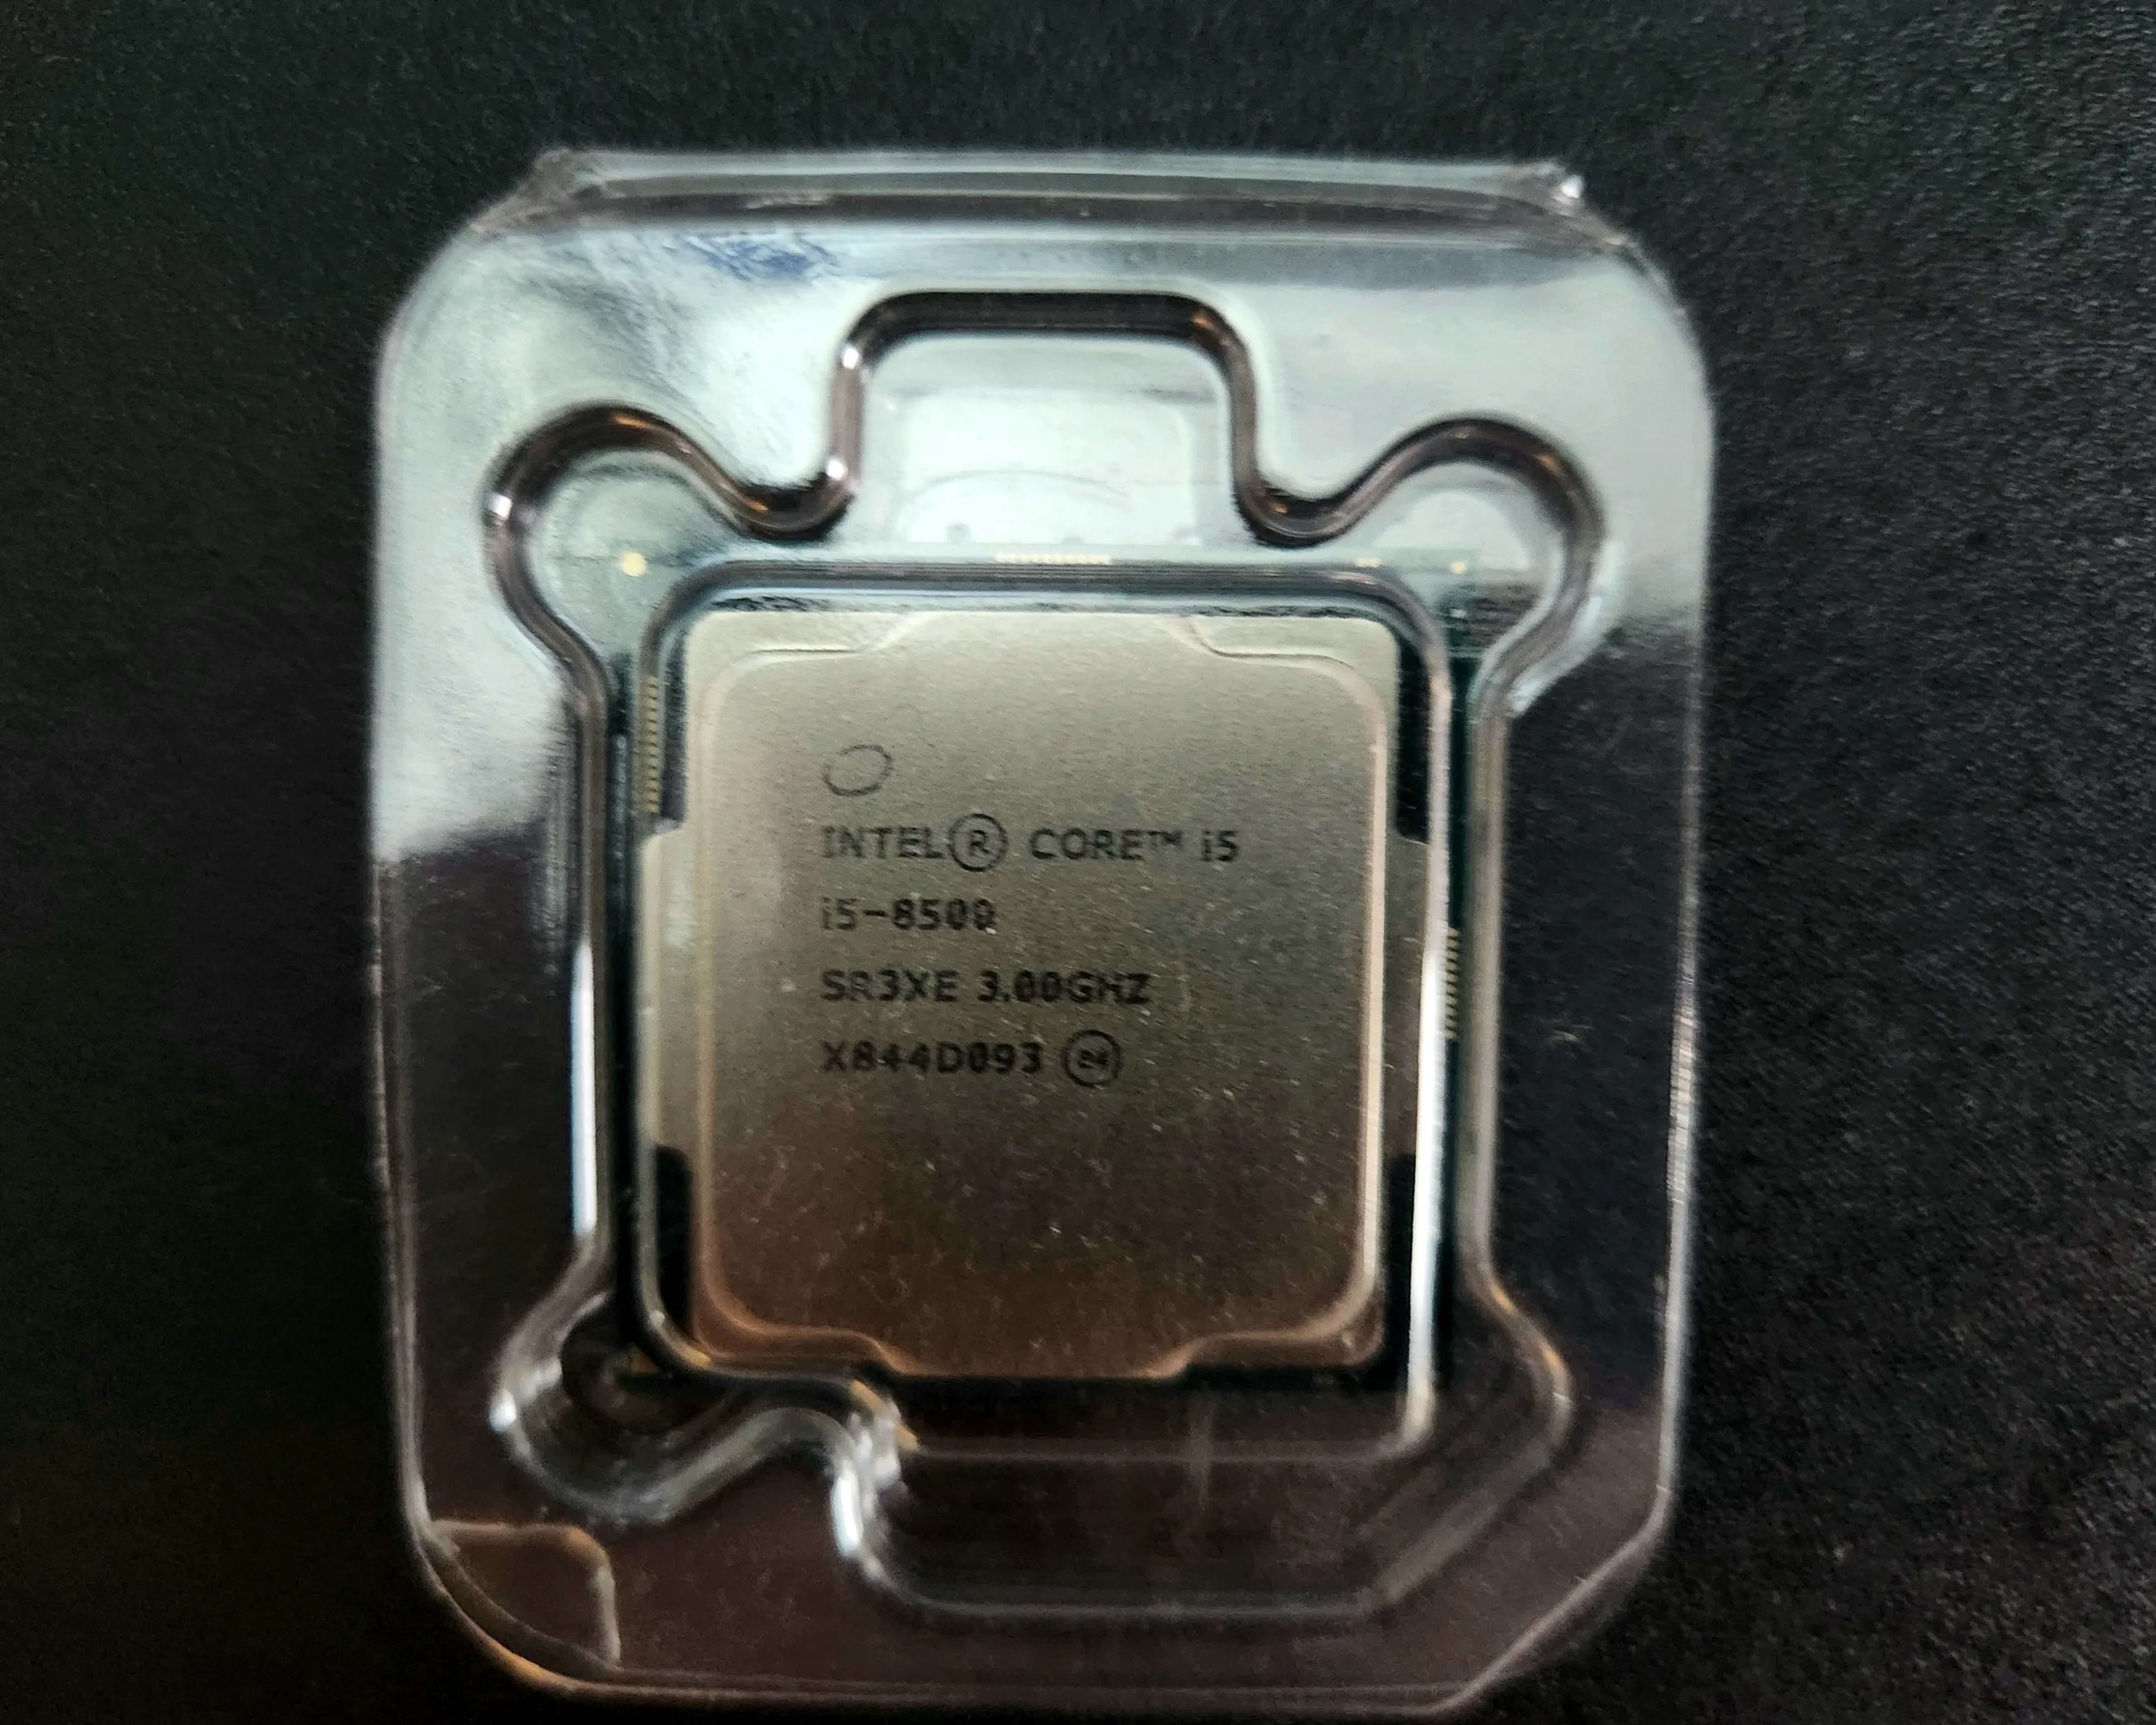 Intel Core i5-8500 SR3XE 3.0GHz Six Core 9MB LGA1151 Processor